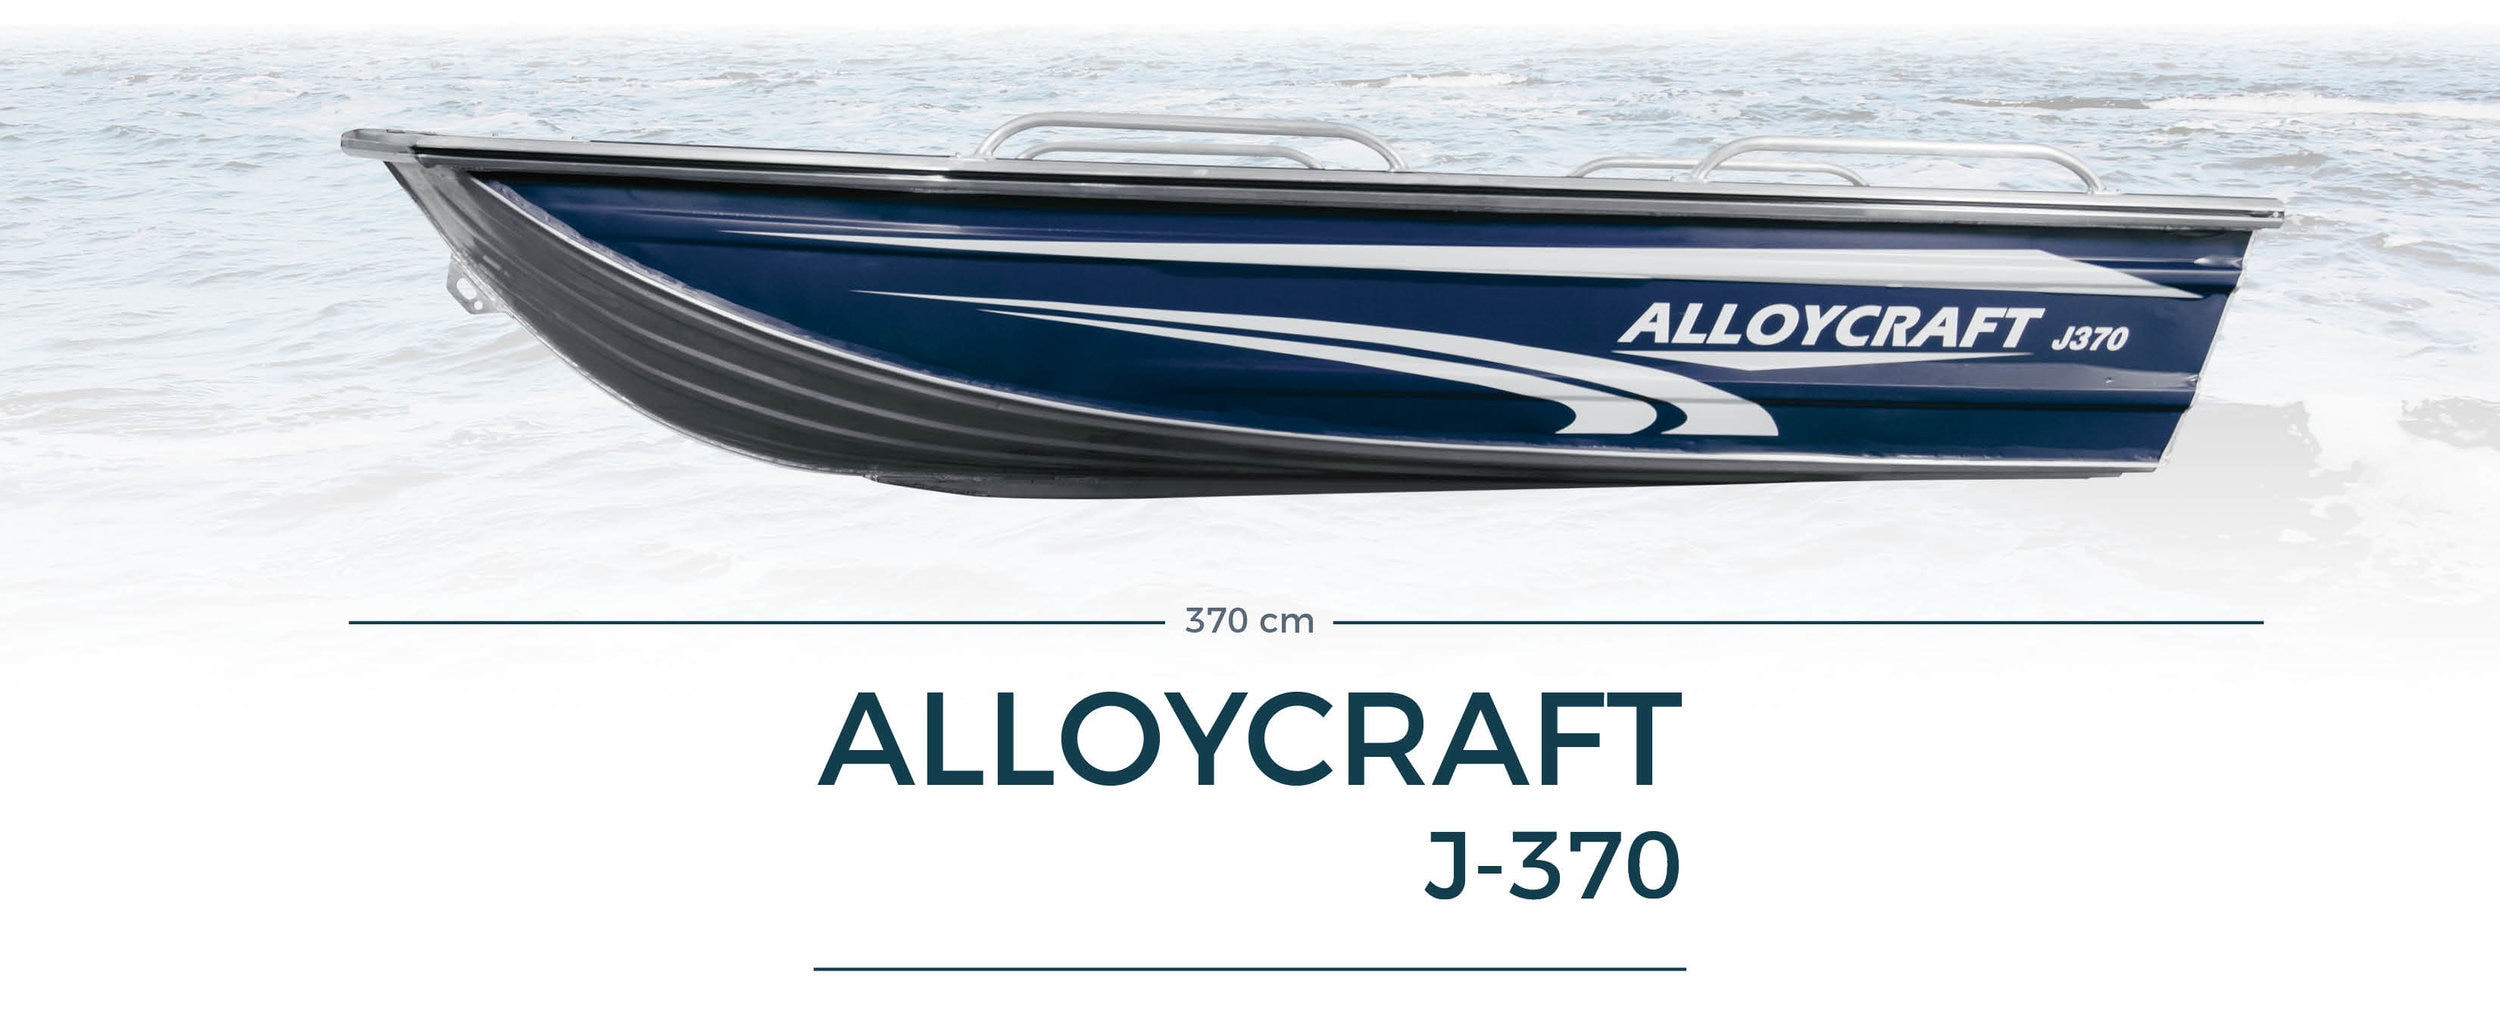 Båt Alloycraft J-370